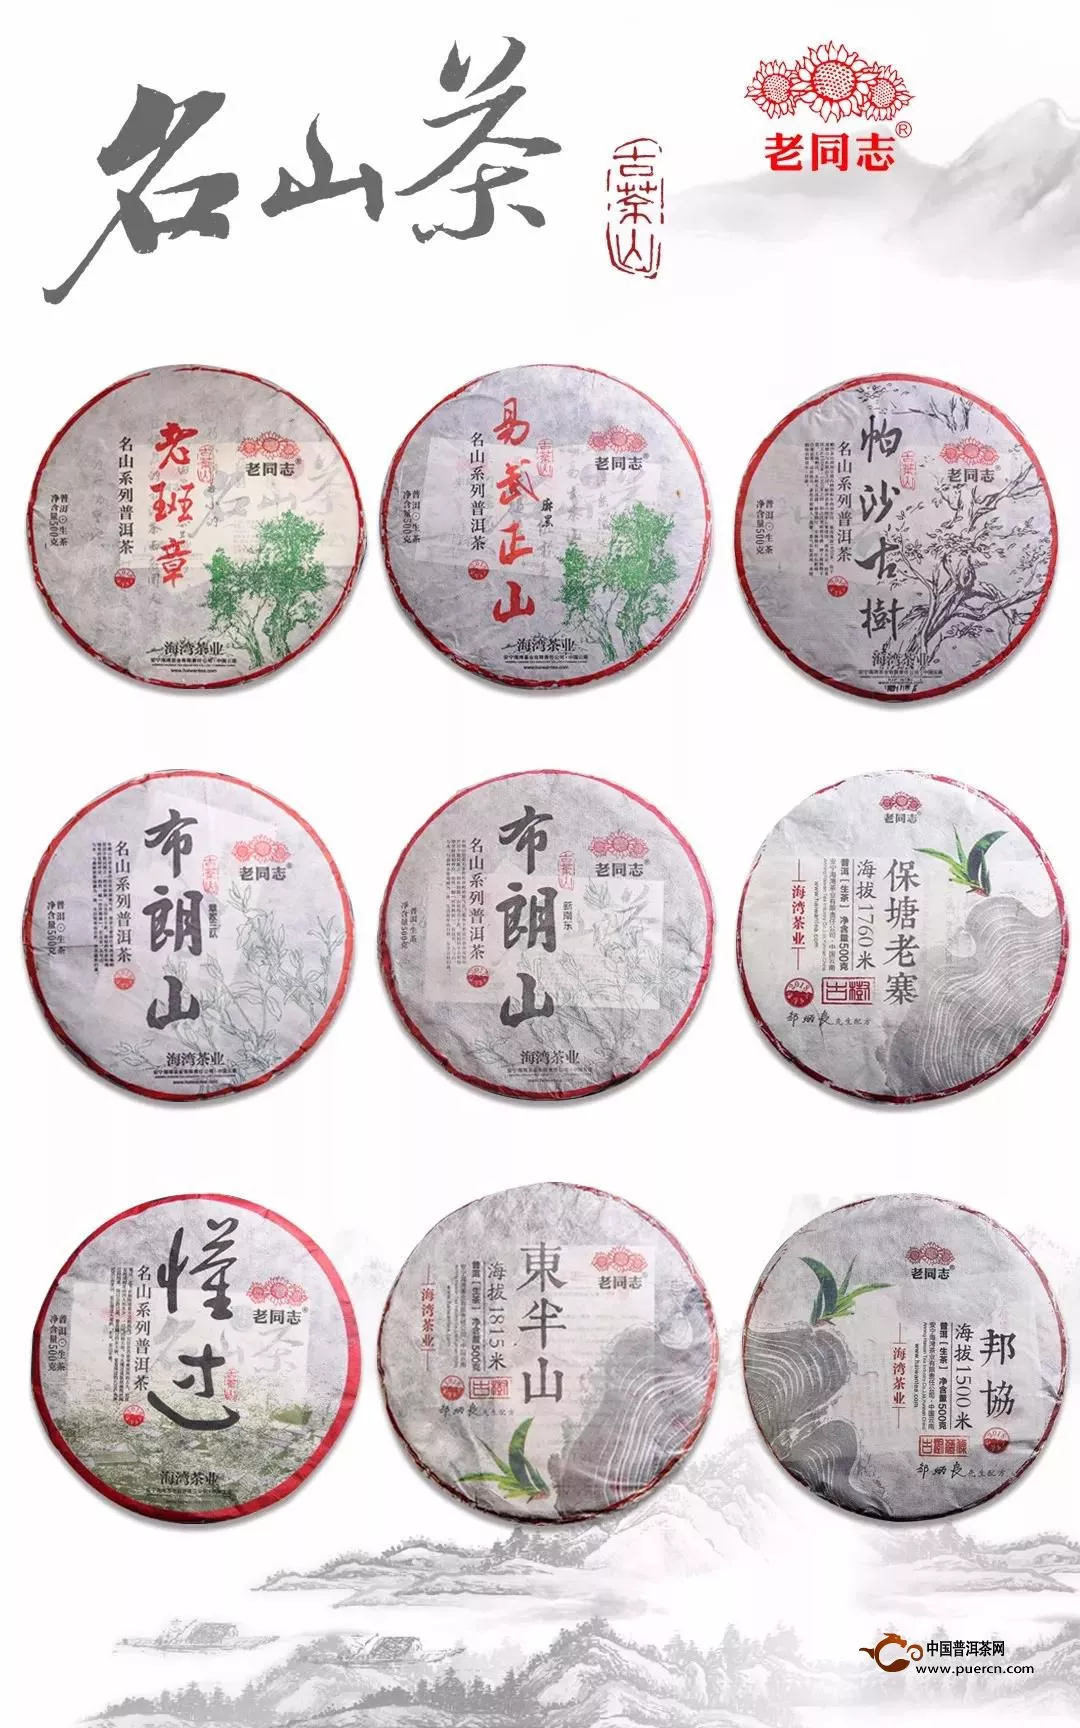 老同志与您相约 2018北京国际茶产业博览会